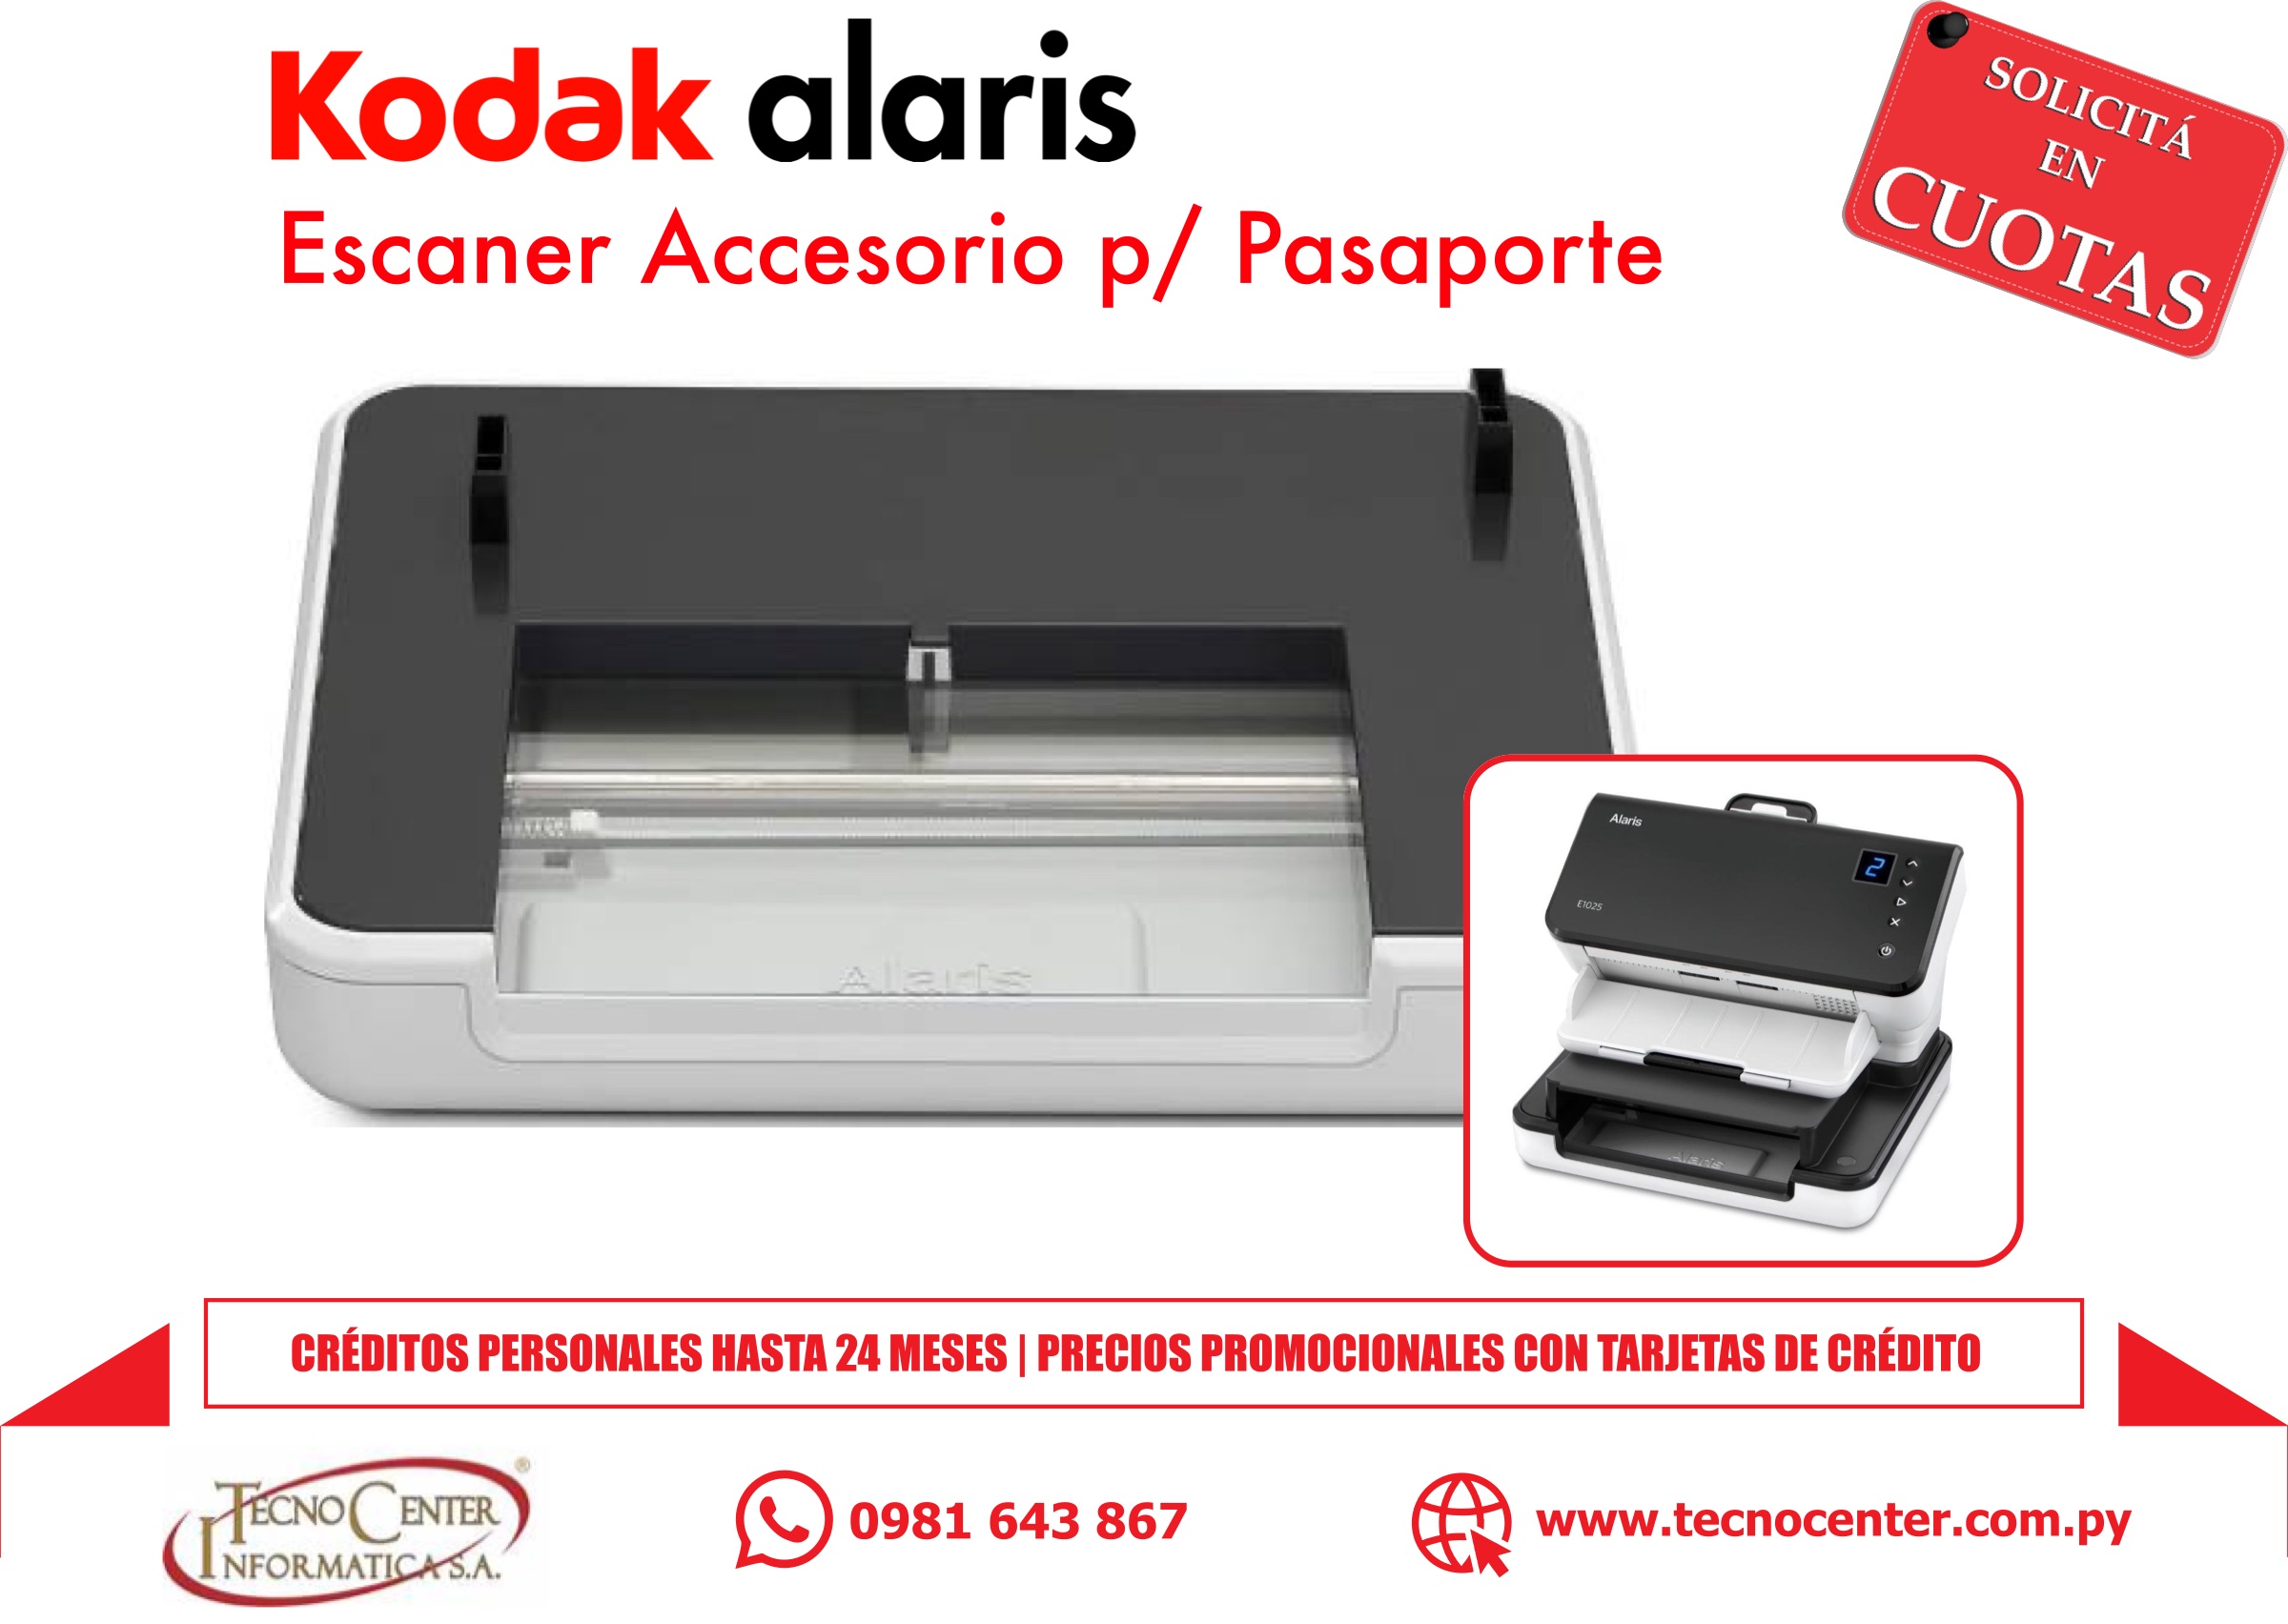 Accesorio de Escaner Kodak Alaris para Pasaportes